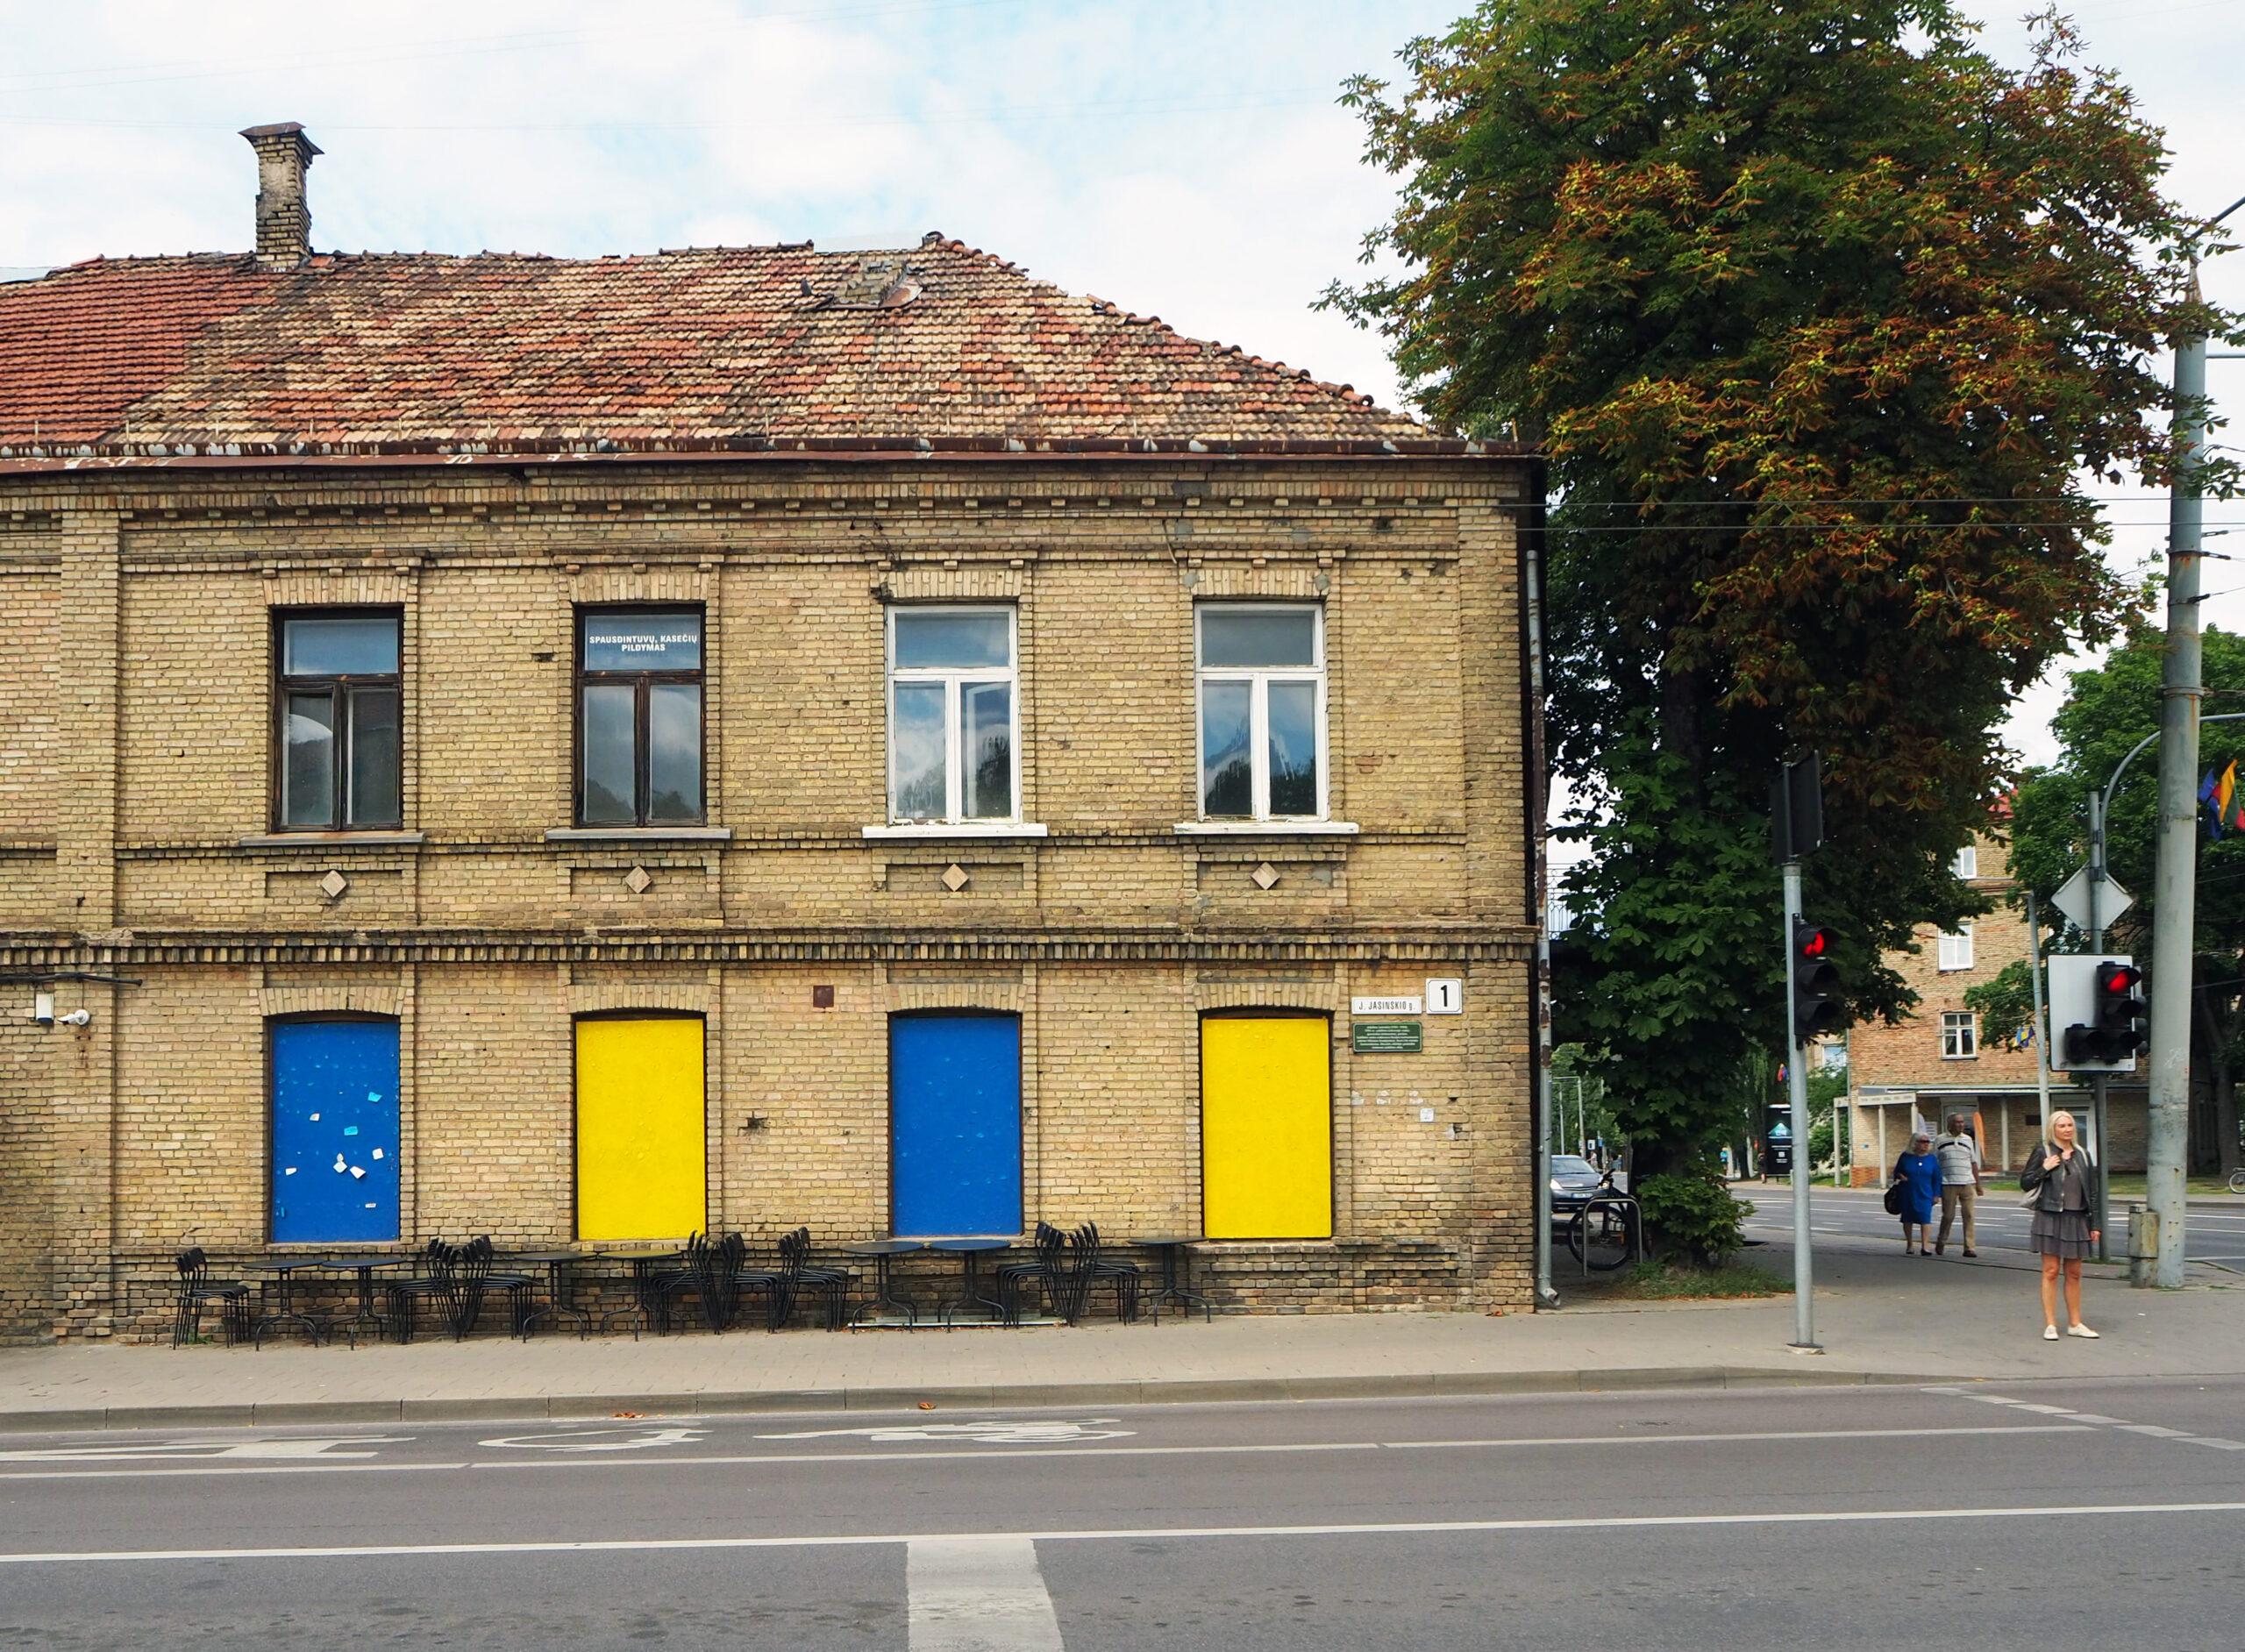 Ukrainan värit vilisevät Vilnan kaduilla. Sininen ja keltainen koristavat niin kauppojen ja julkisten tilojen kuin yksityisasuntojen julkisivuja.